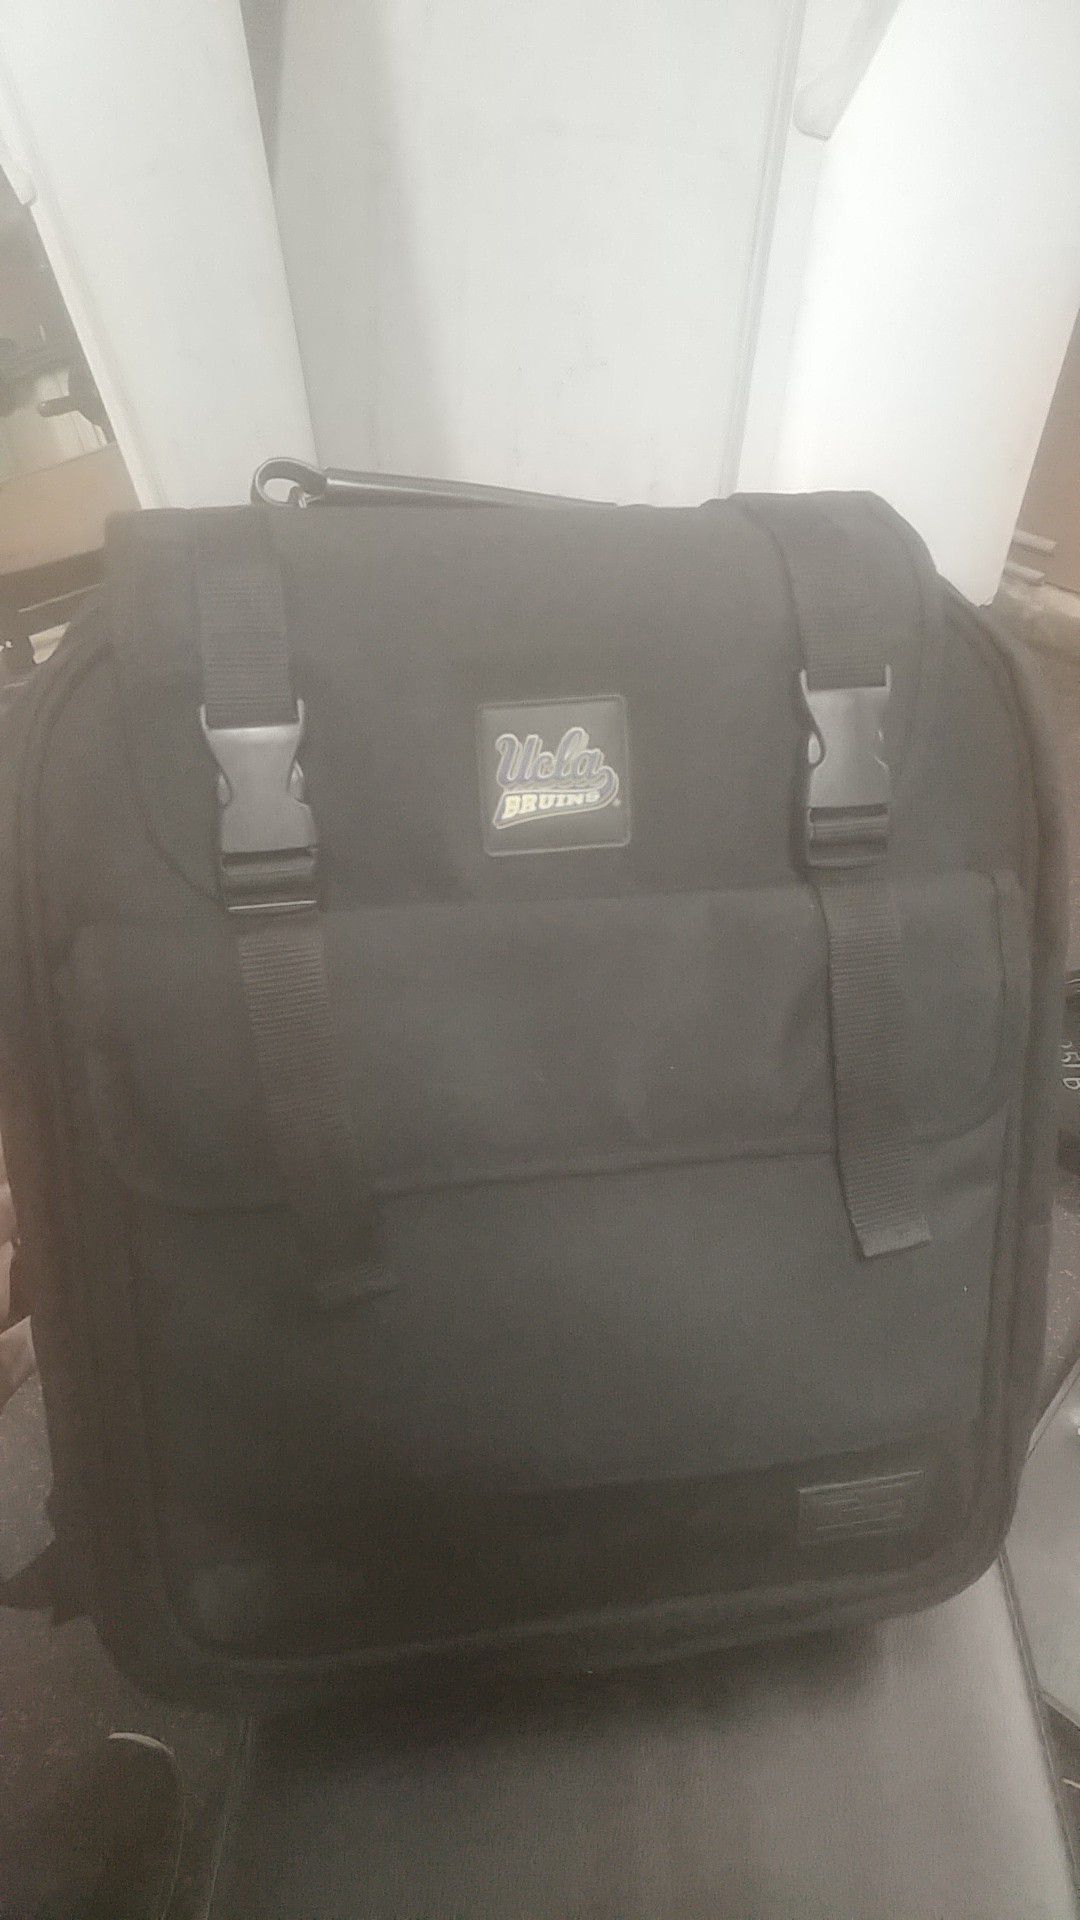 Targus UCLA laptop backpack